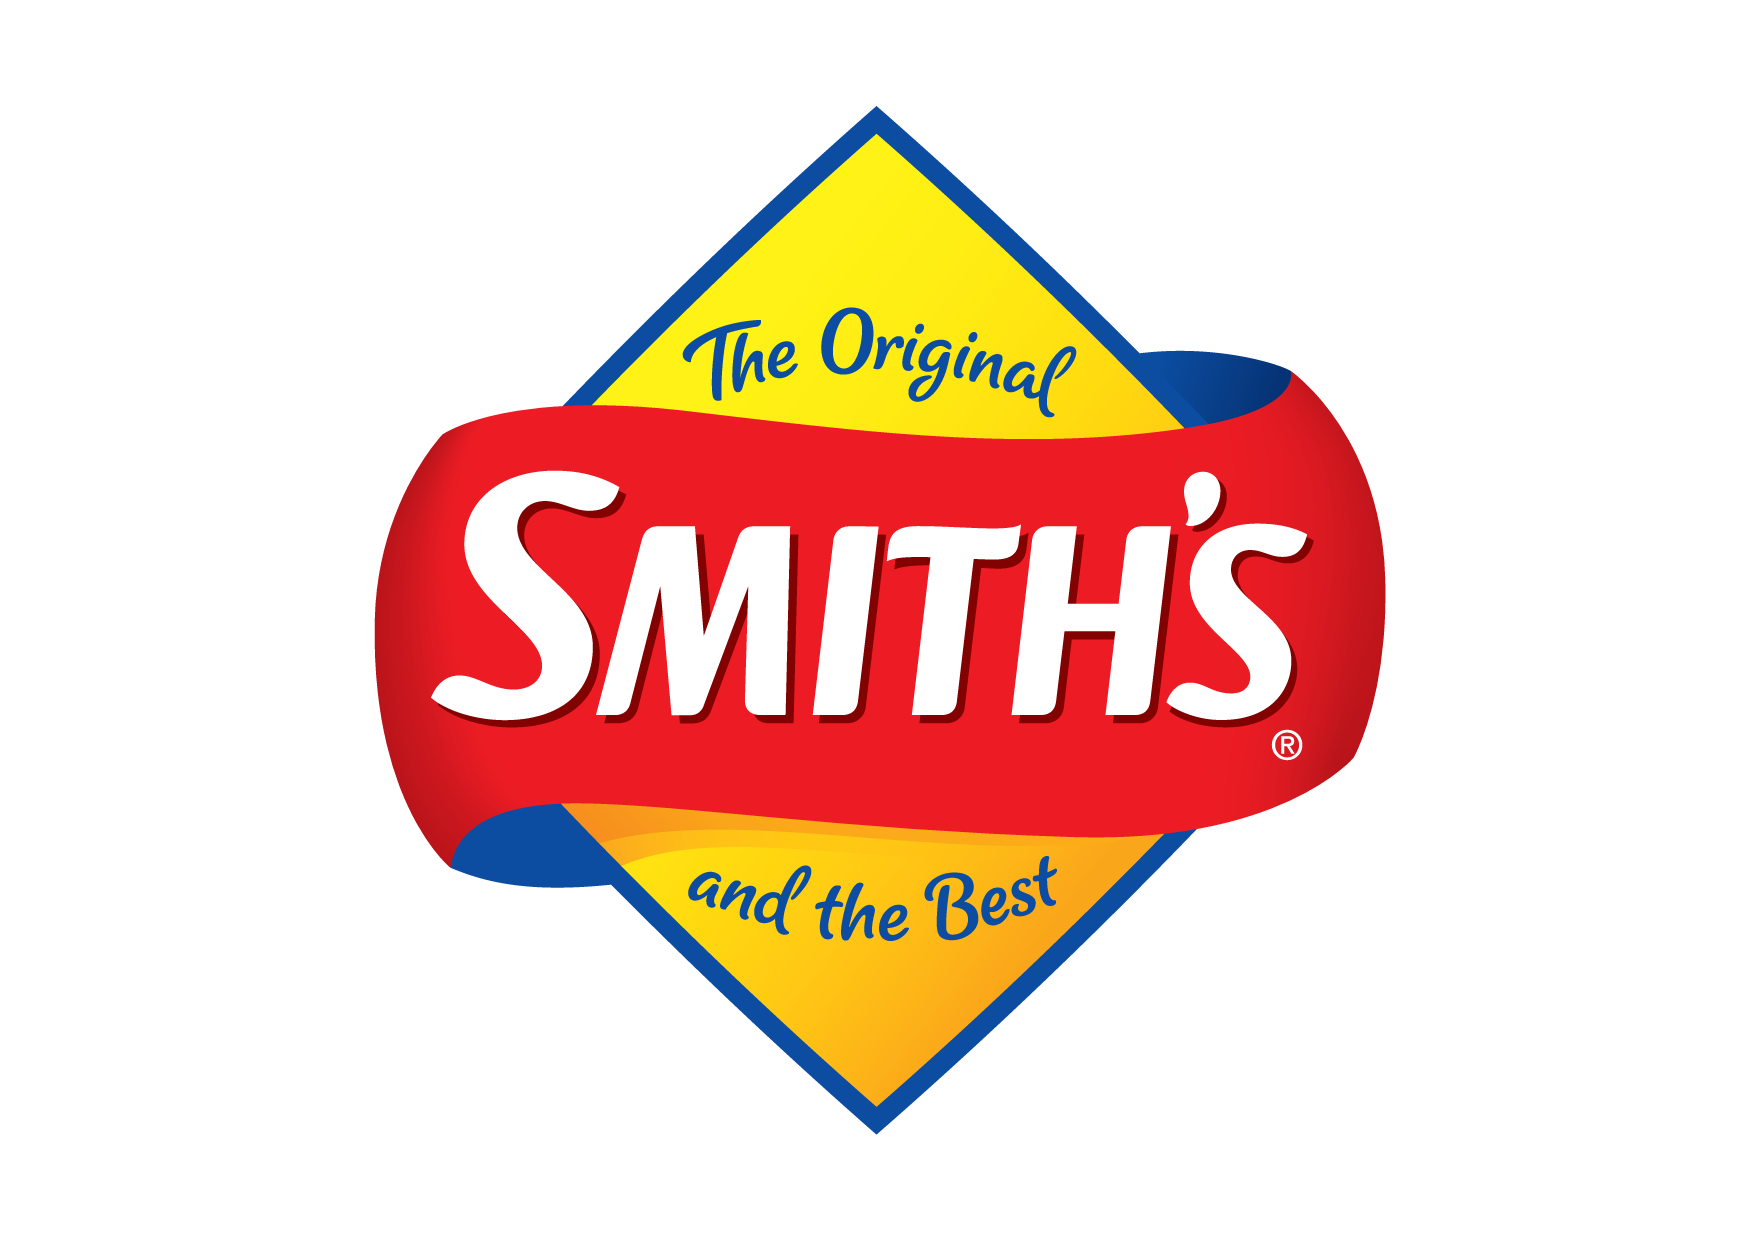 The Smith’s Snackfoods Company